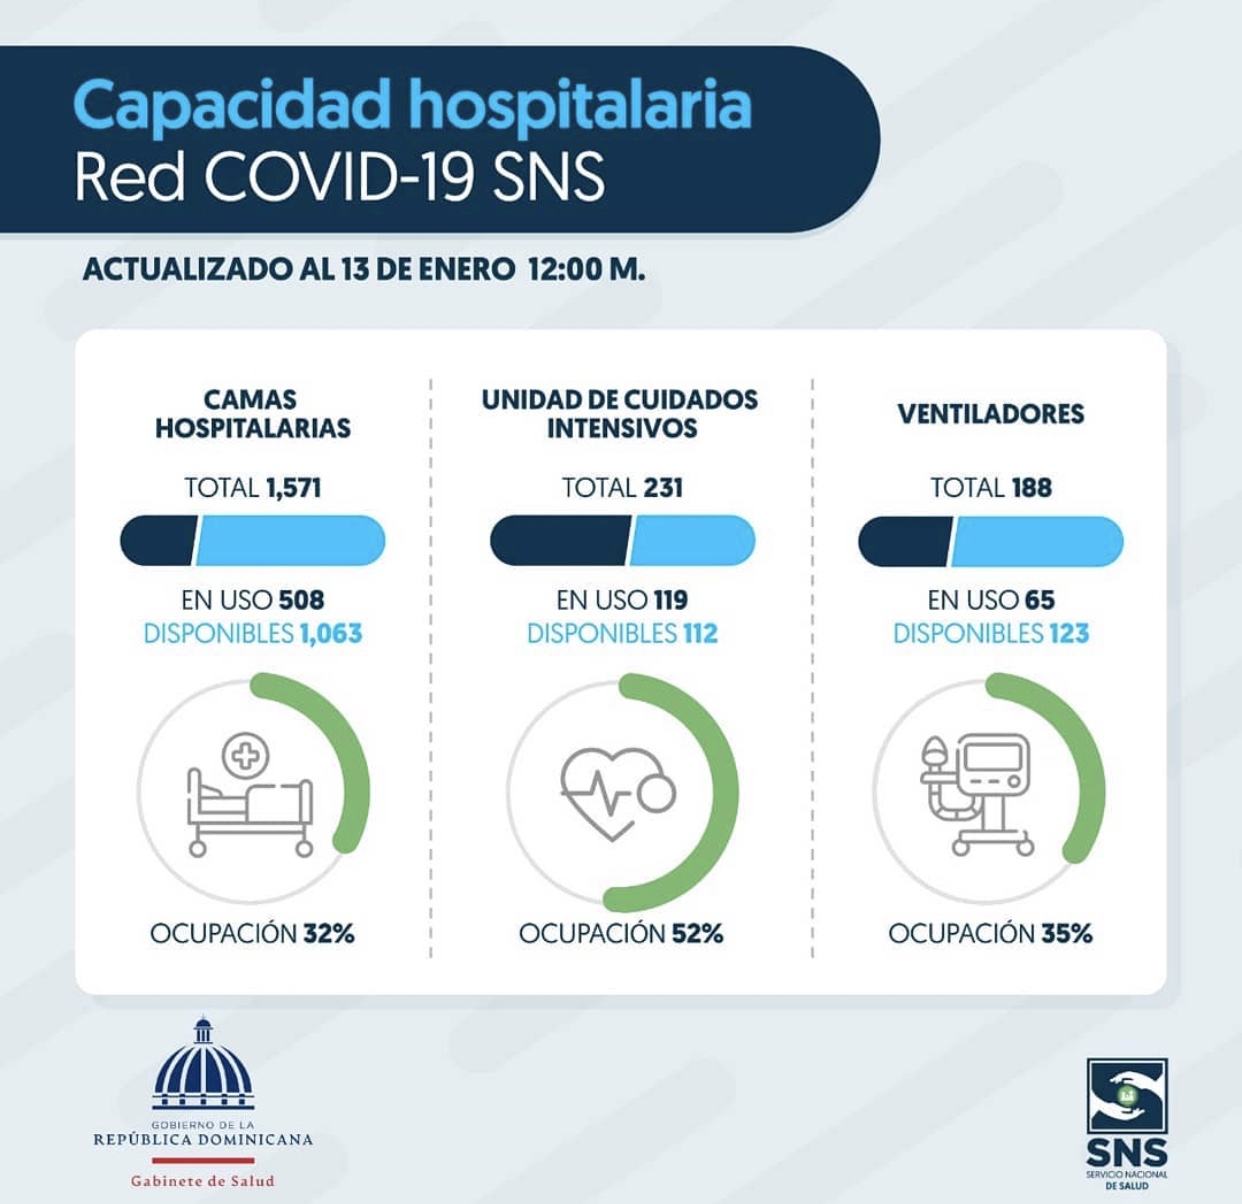 You are currently viewing Disponibilidad hospitalaria de la red COVID-19 del SNS